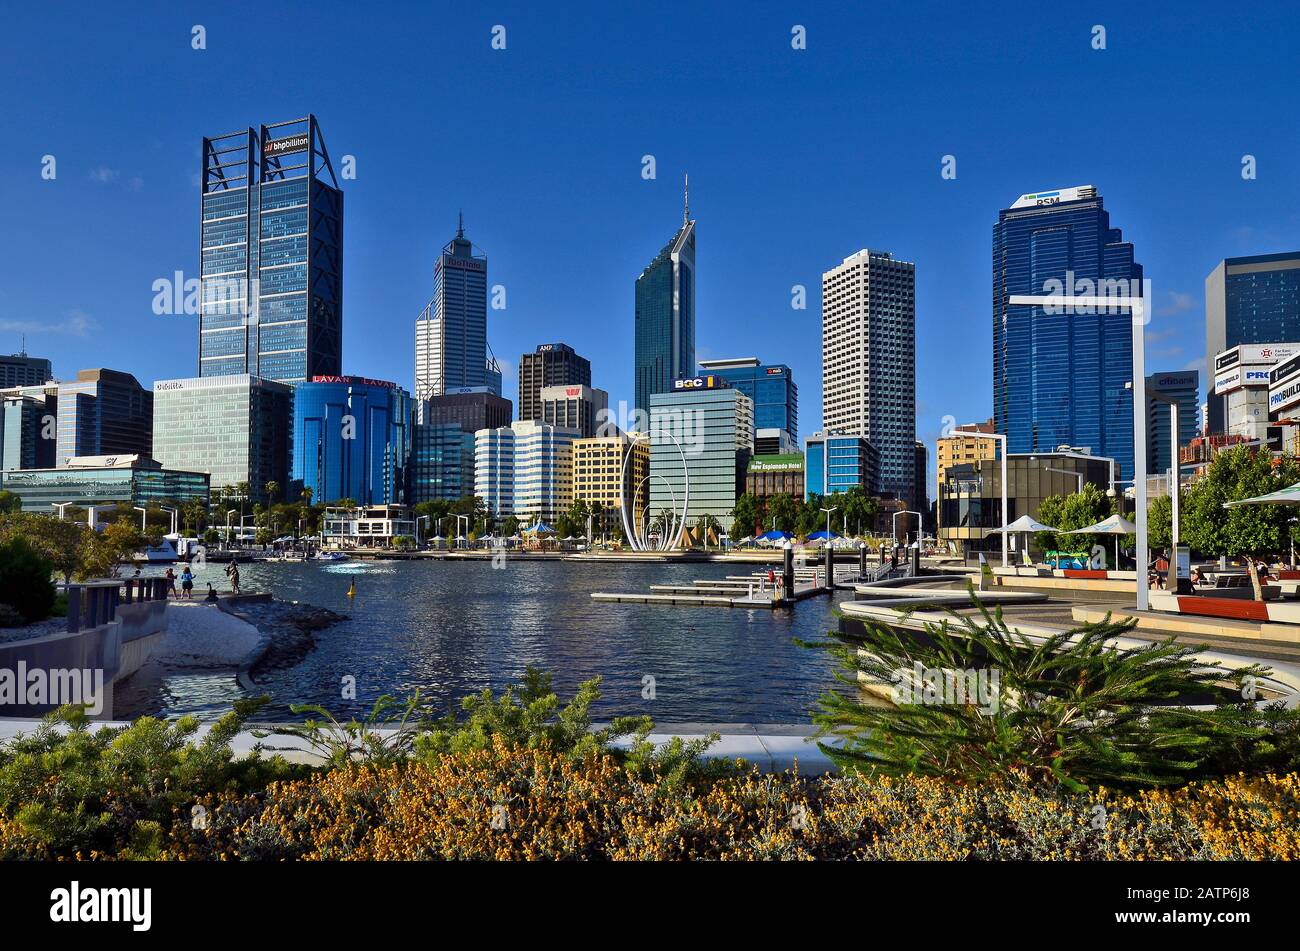 Perth, WA, Australia - 27 de noviembre de 2017: Horizonte de Perth sobre el río Swan con diferentes edificios y escultura de Spanda en la explanada Foto de stock